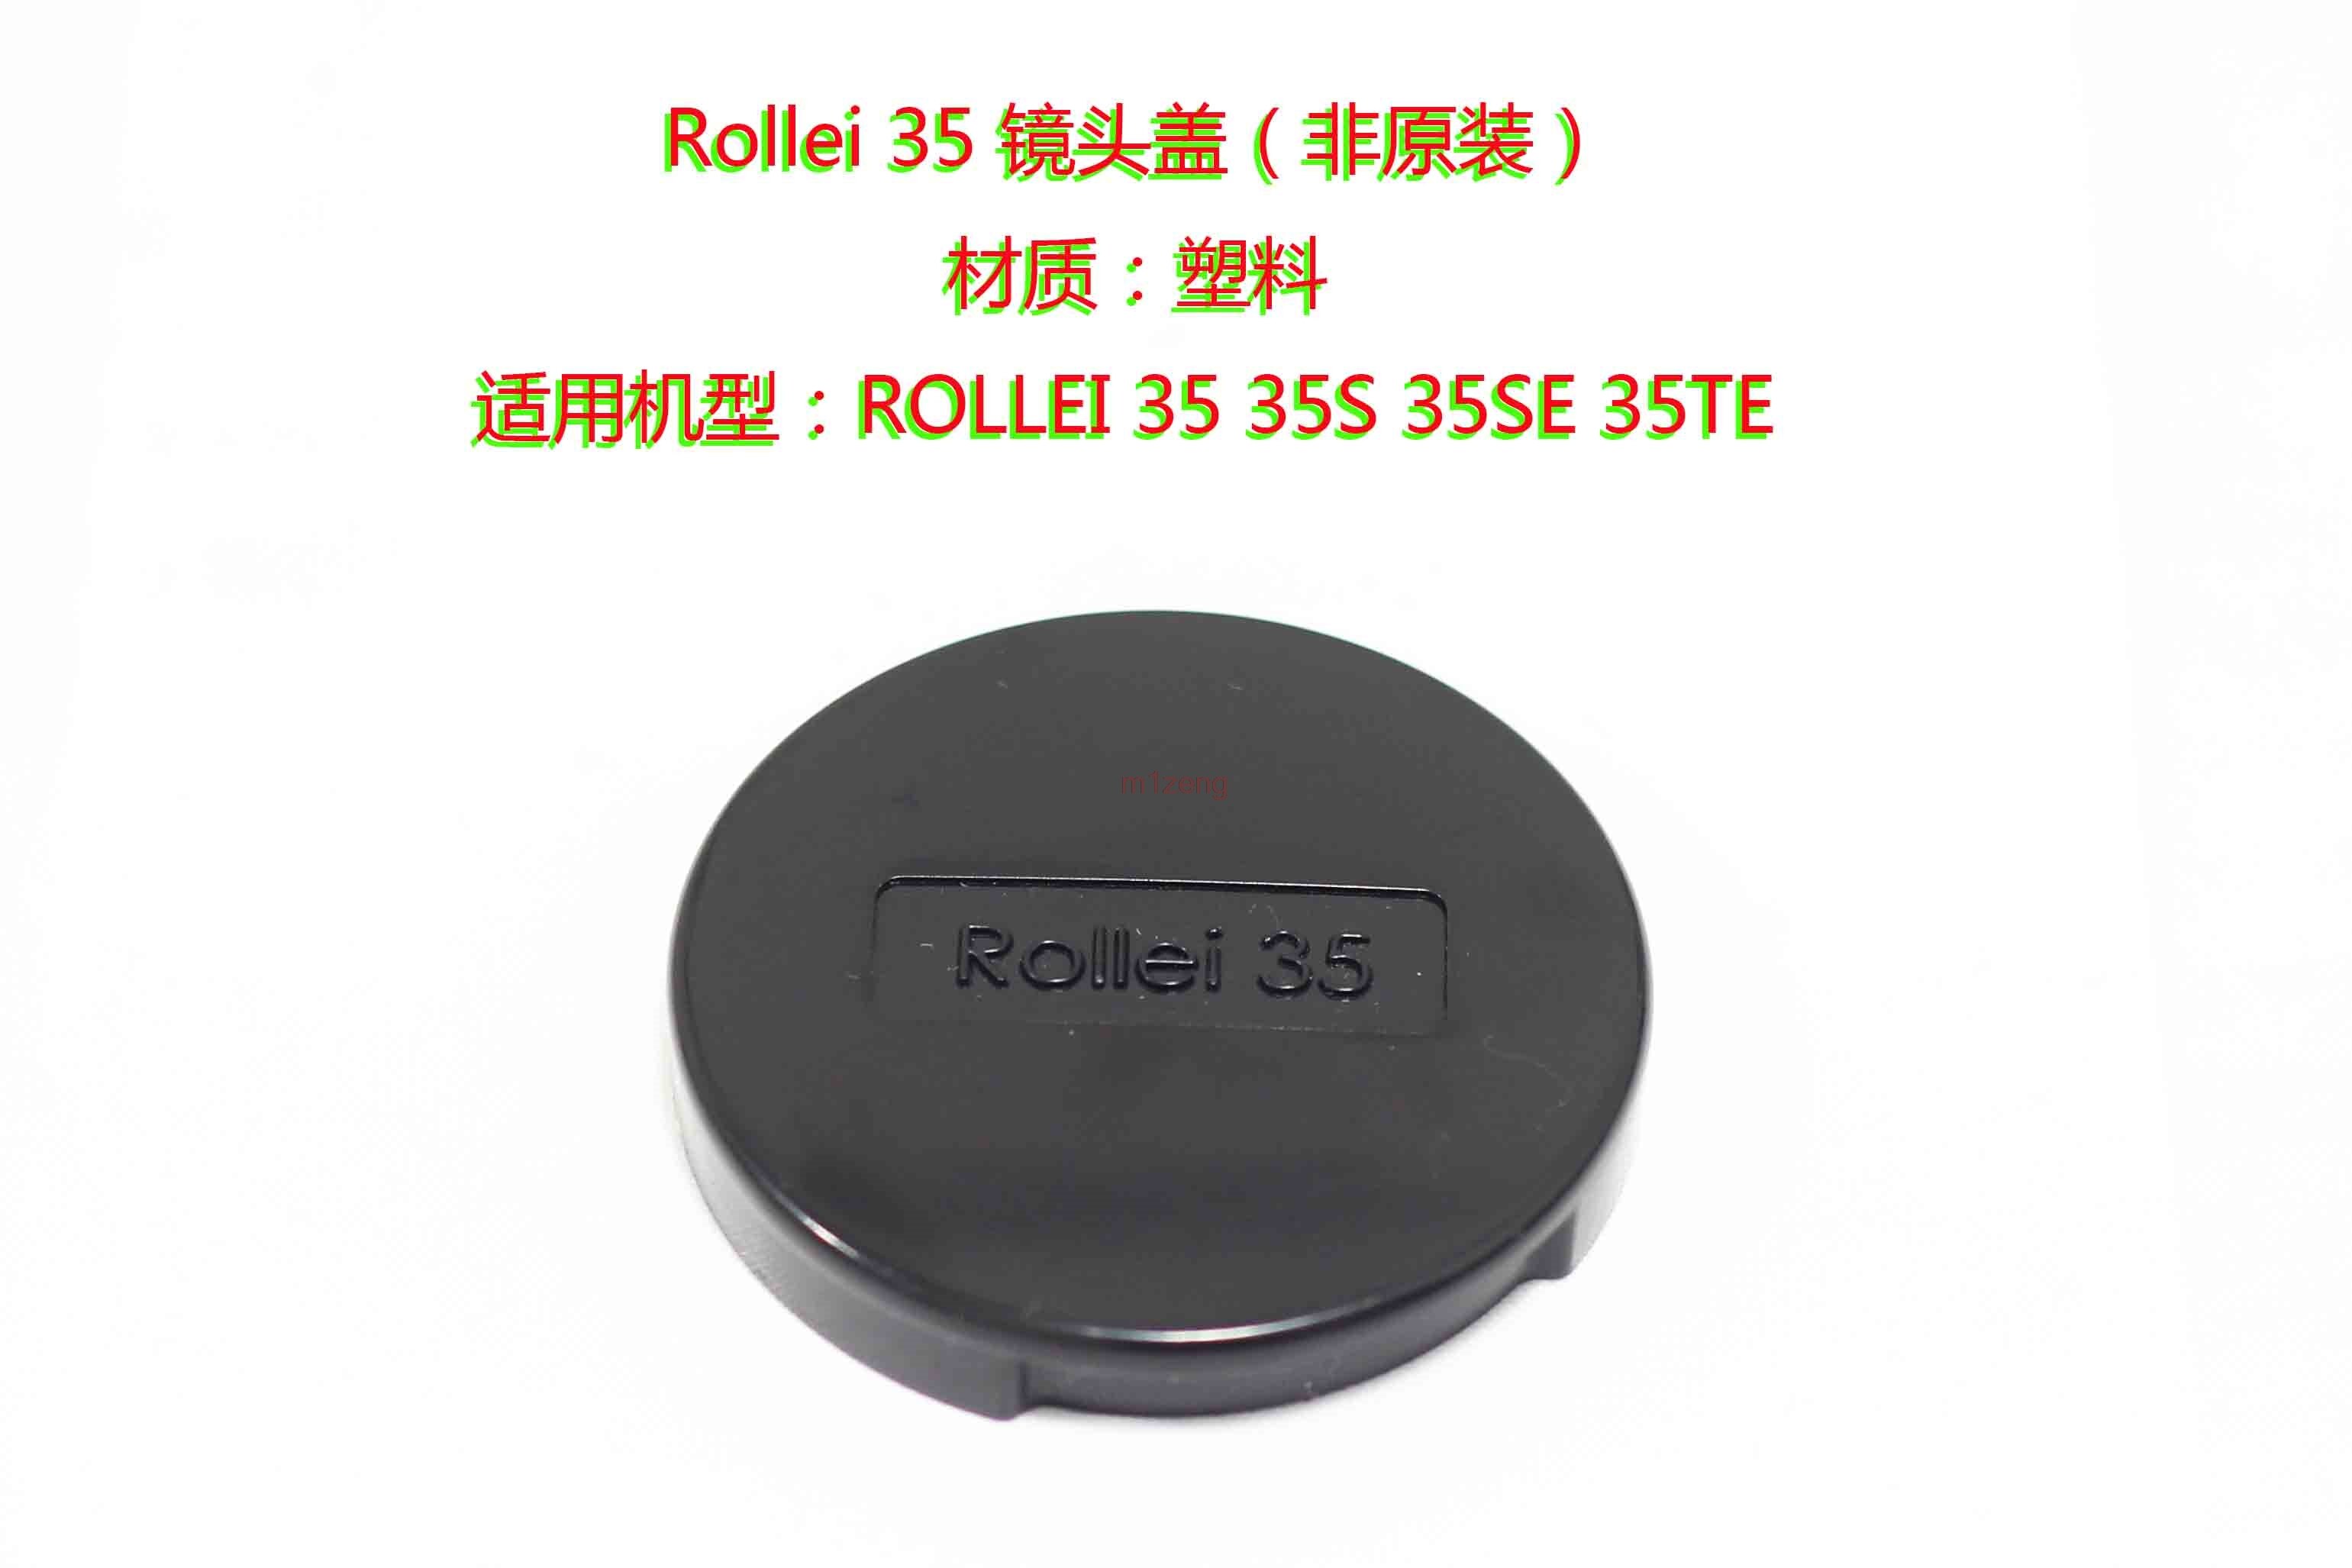 Voorste Lensdop cover protector voor Rollei 35 35 S 35SE 35TE camera